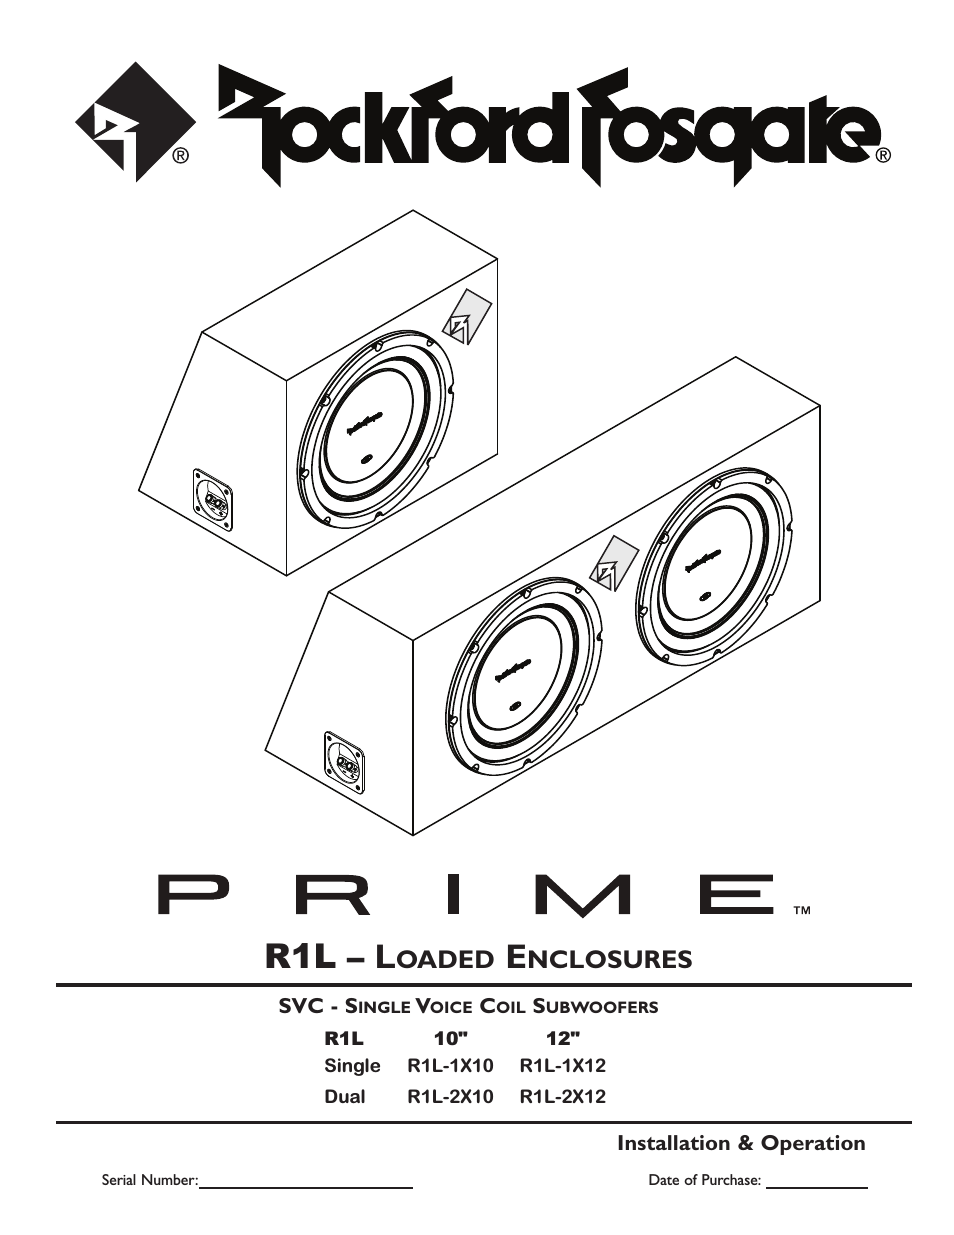 Prime R1L-1X10